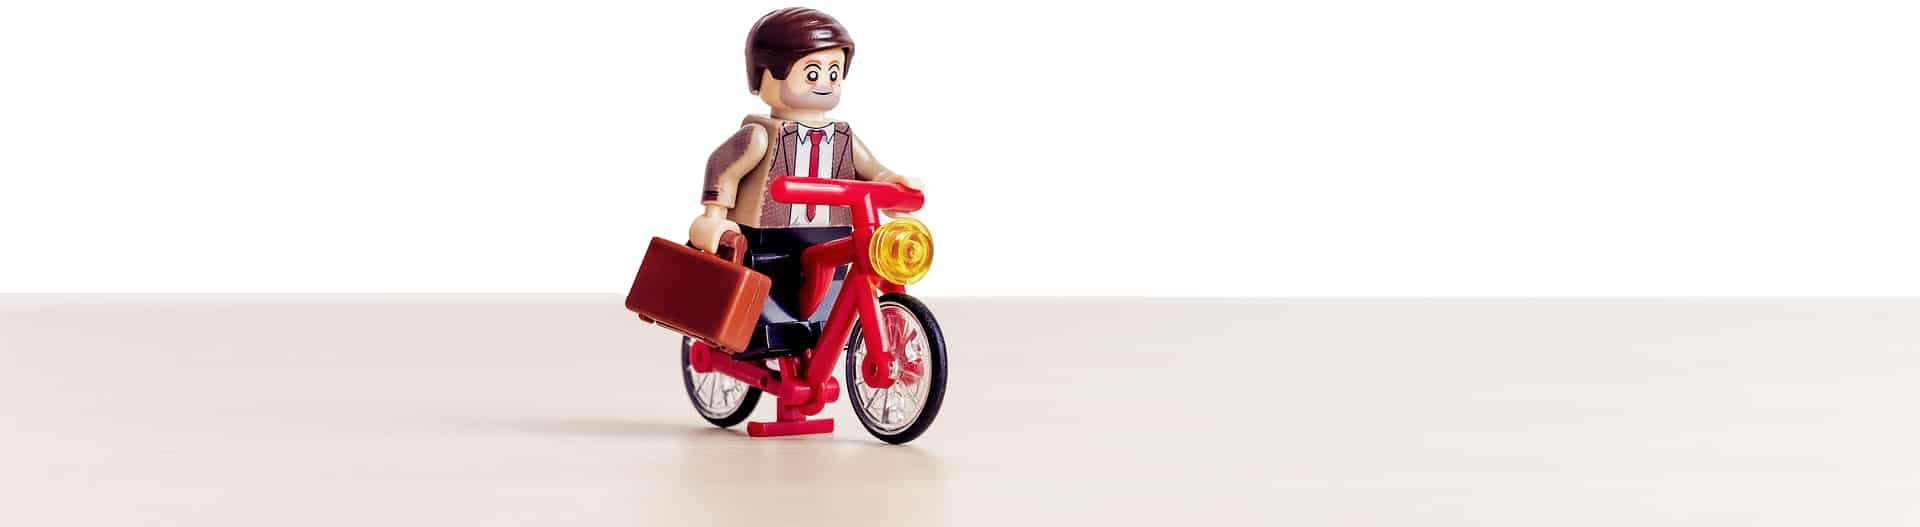 køretøj etik civilisere Read About The Best Lego Table for Adults